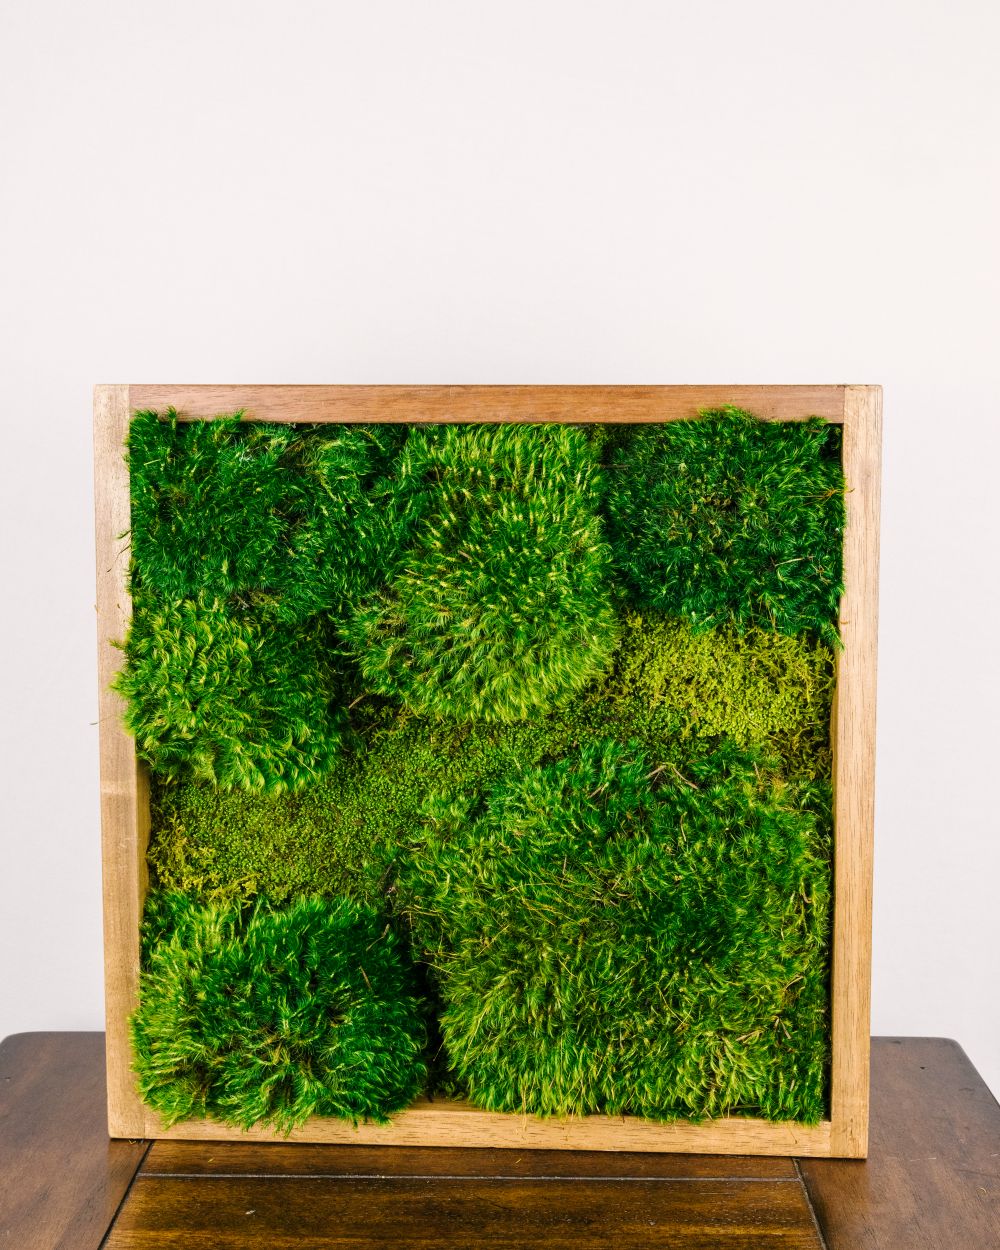 TIHOOD 30 PCS 3 Size Artificial Moss Rocks Decorative, Green Moss